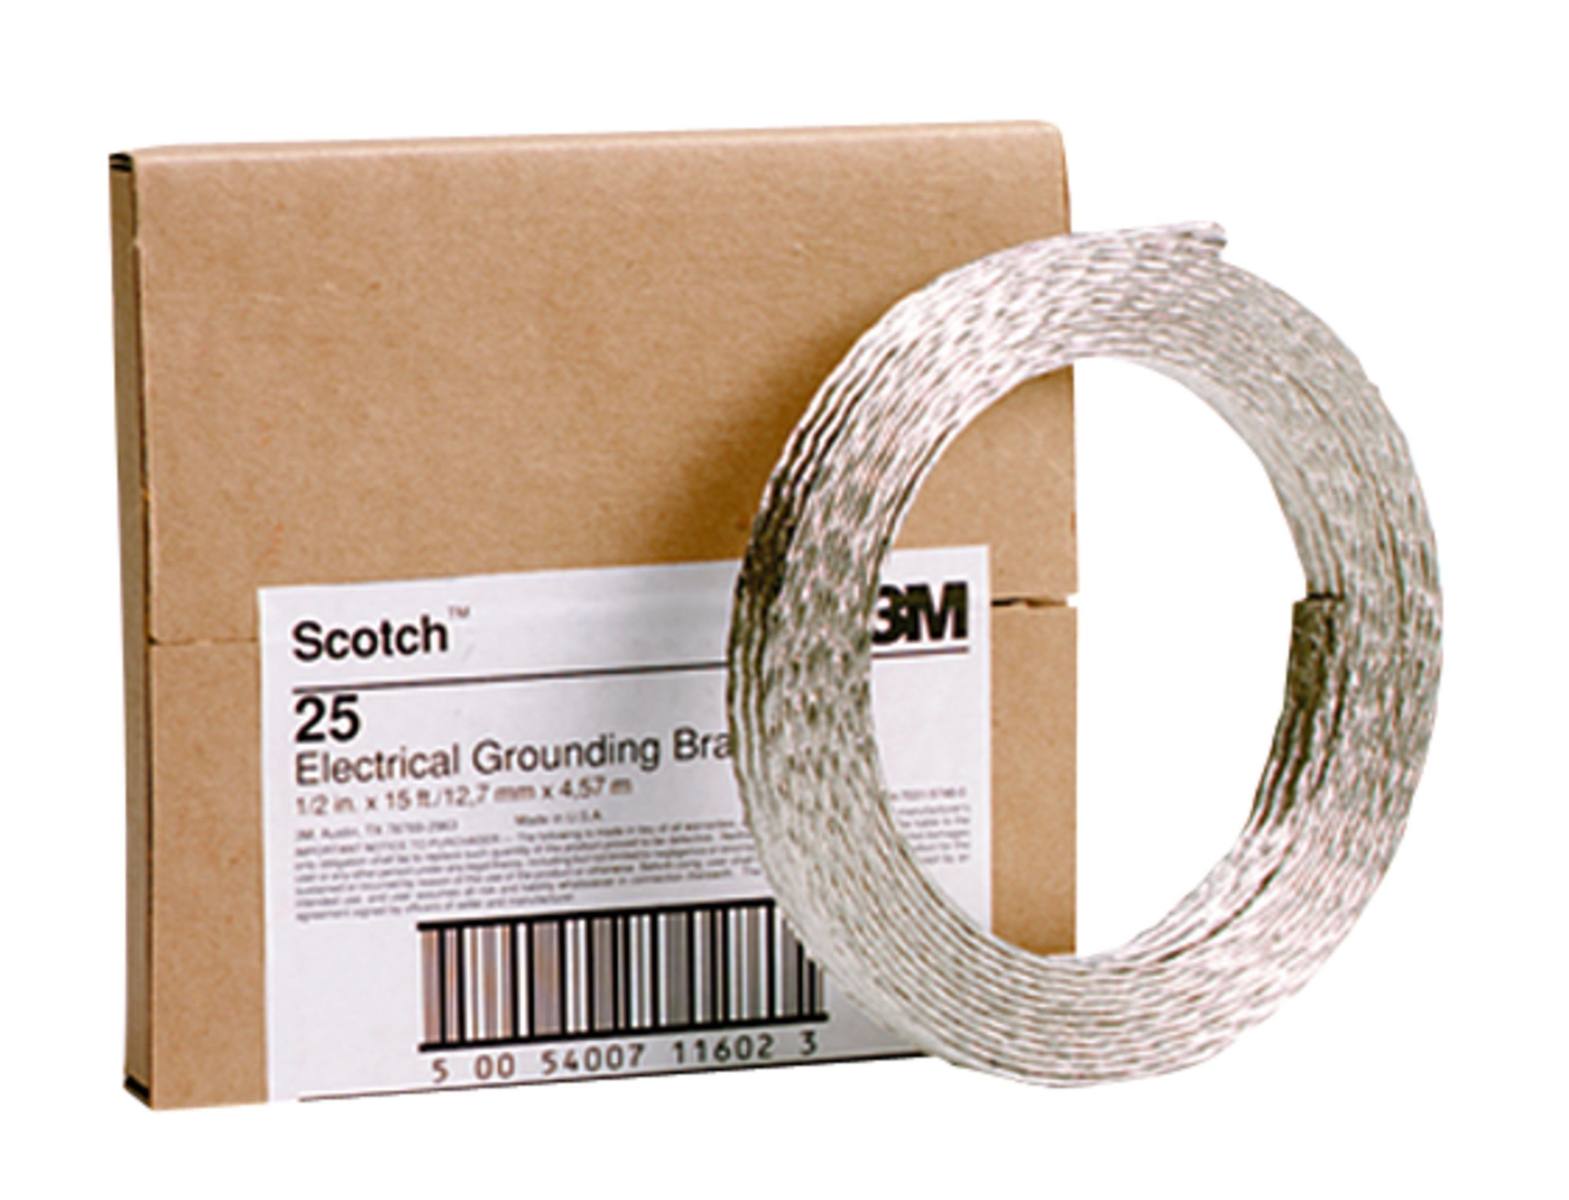 3M Scotch 25 Erdungsband, Kupfer-verzinnt, 25 mm², 13 mm x 4,5 m, 2,38 mm